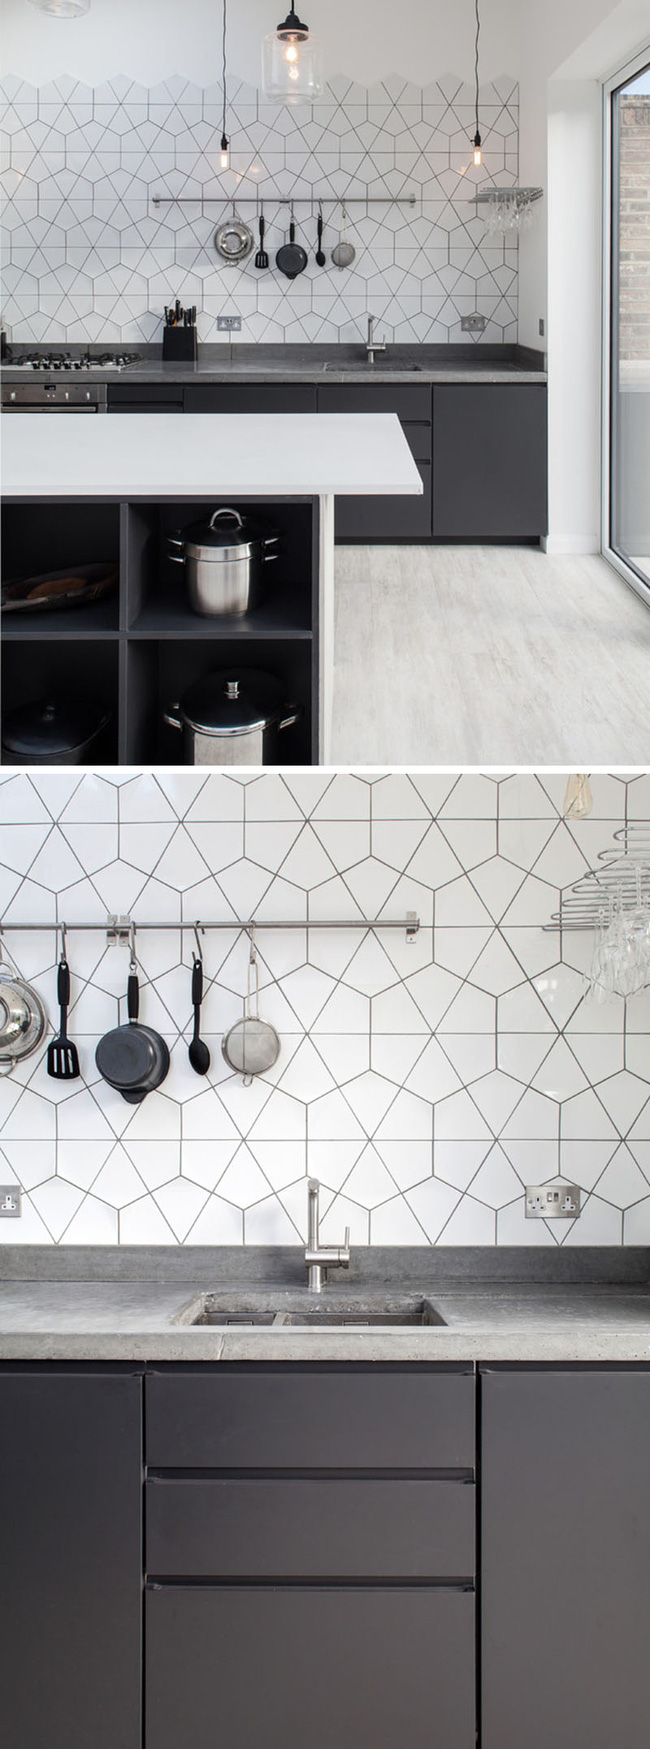 9 mẫu gạch ốp nhà bếp theo phong cách hình học cho chị em tùy ý lựa chọn